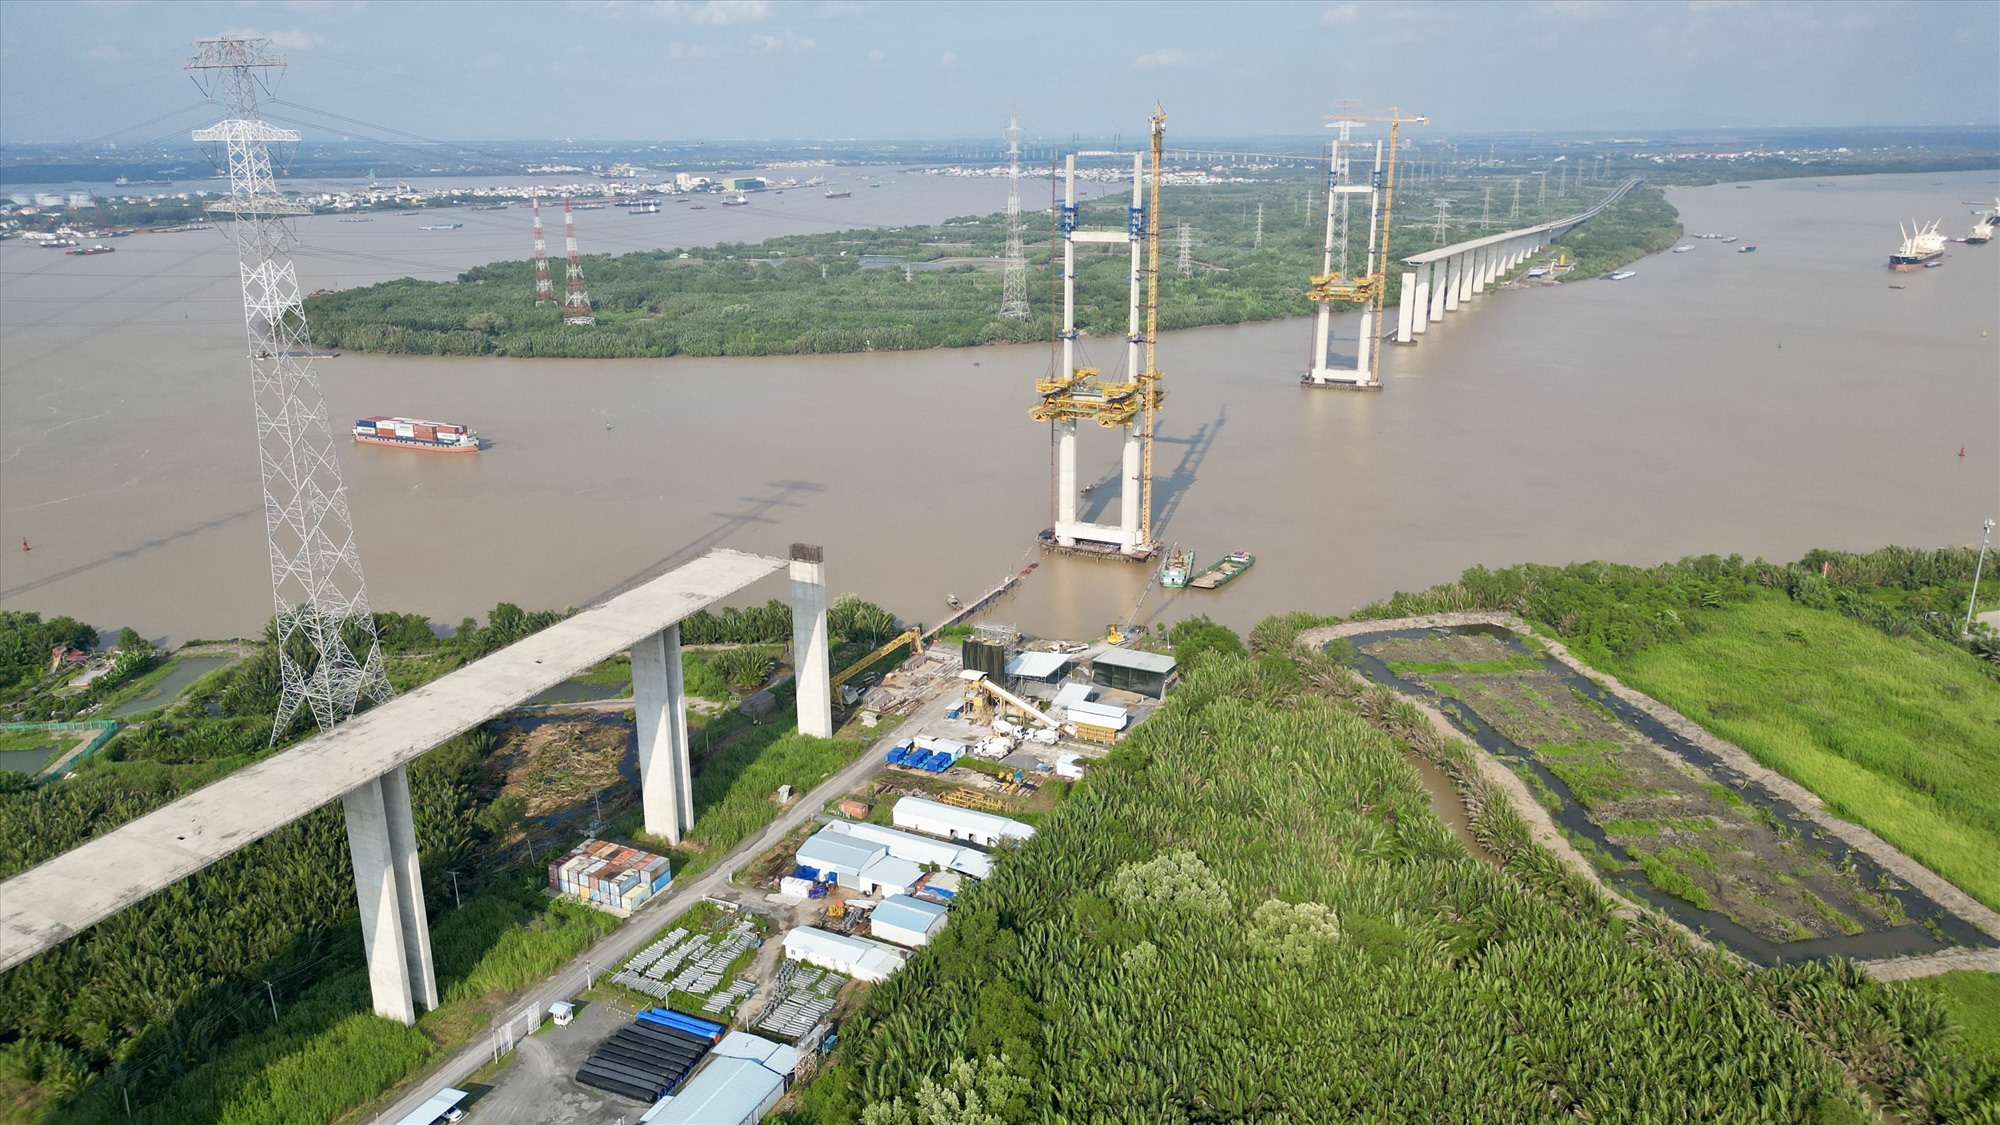 Cầu Bình Khánh khởi công 8/2015, dài 2,76 km, nhịp chính dài 375 m bắc qua sông Soài Rạp, nối huyện Nhà Bè và Cần Giờ của TP HCM. Đây là một trong những công trình quan trọng nhất thuộc dự án. 